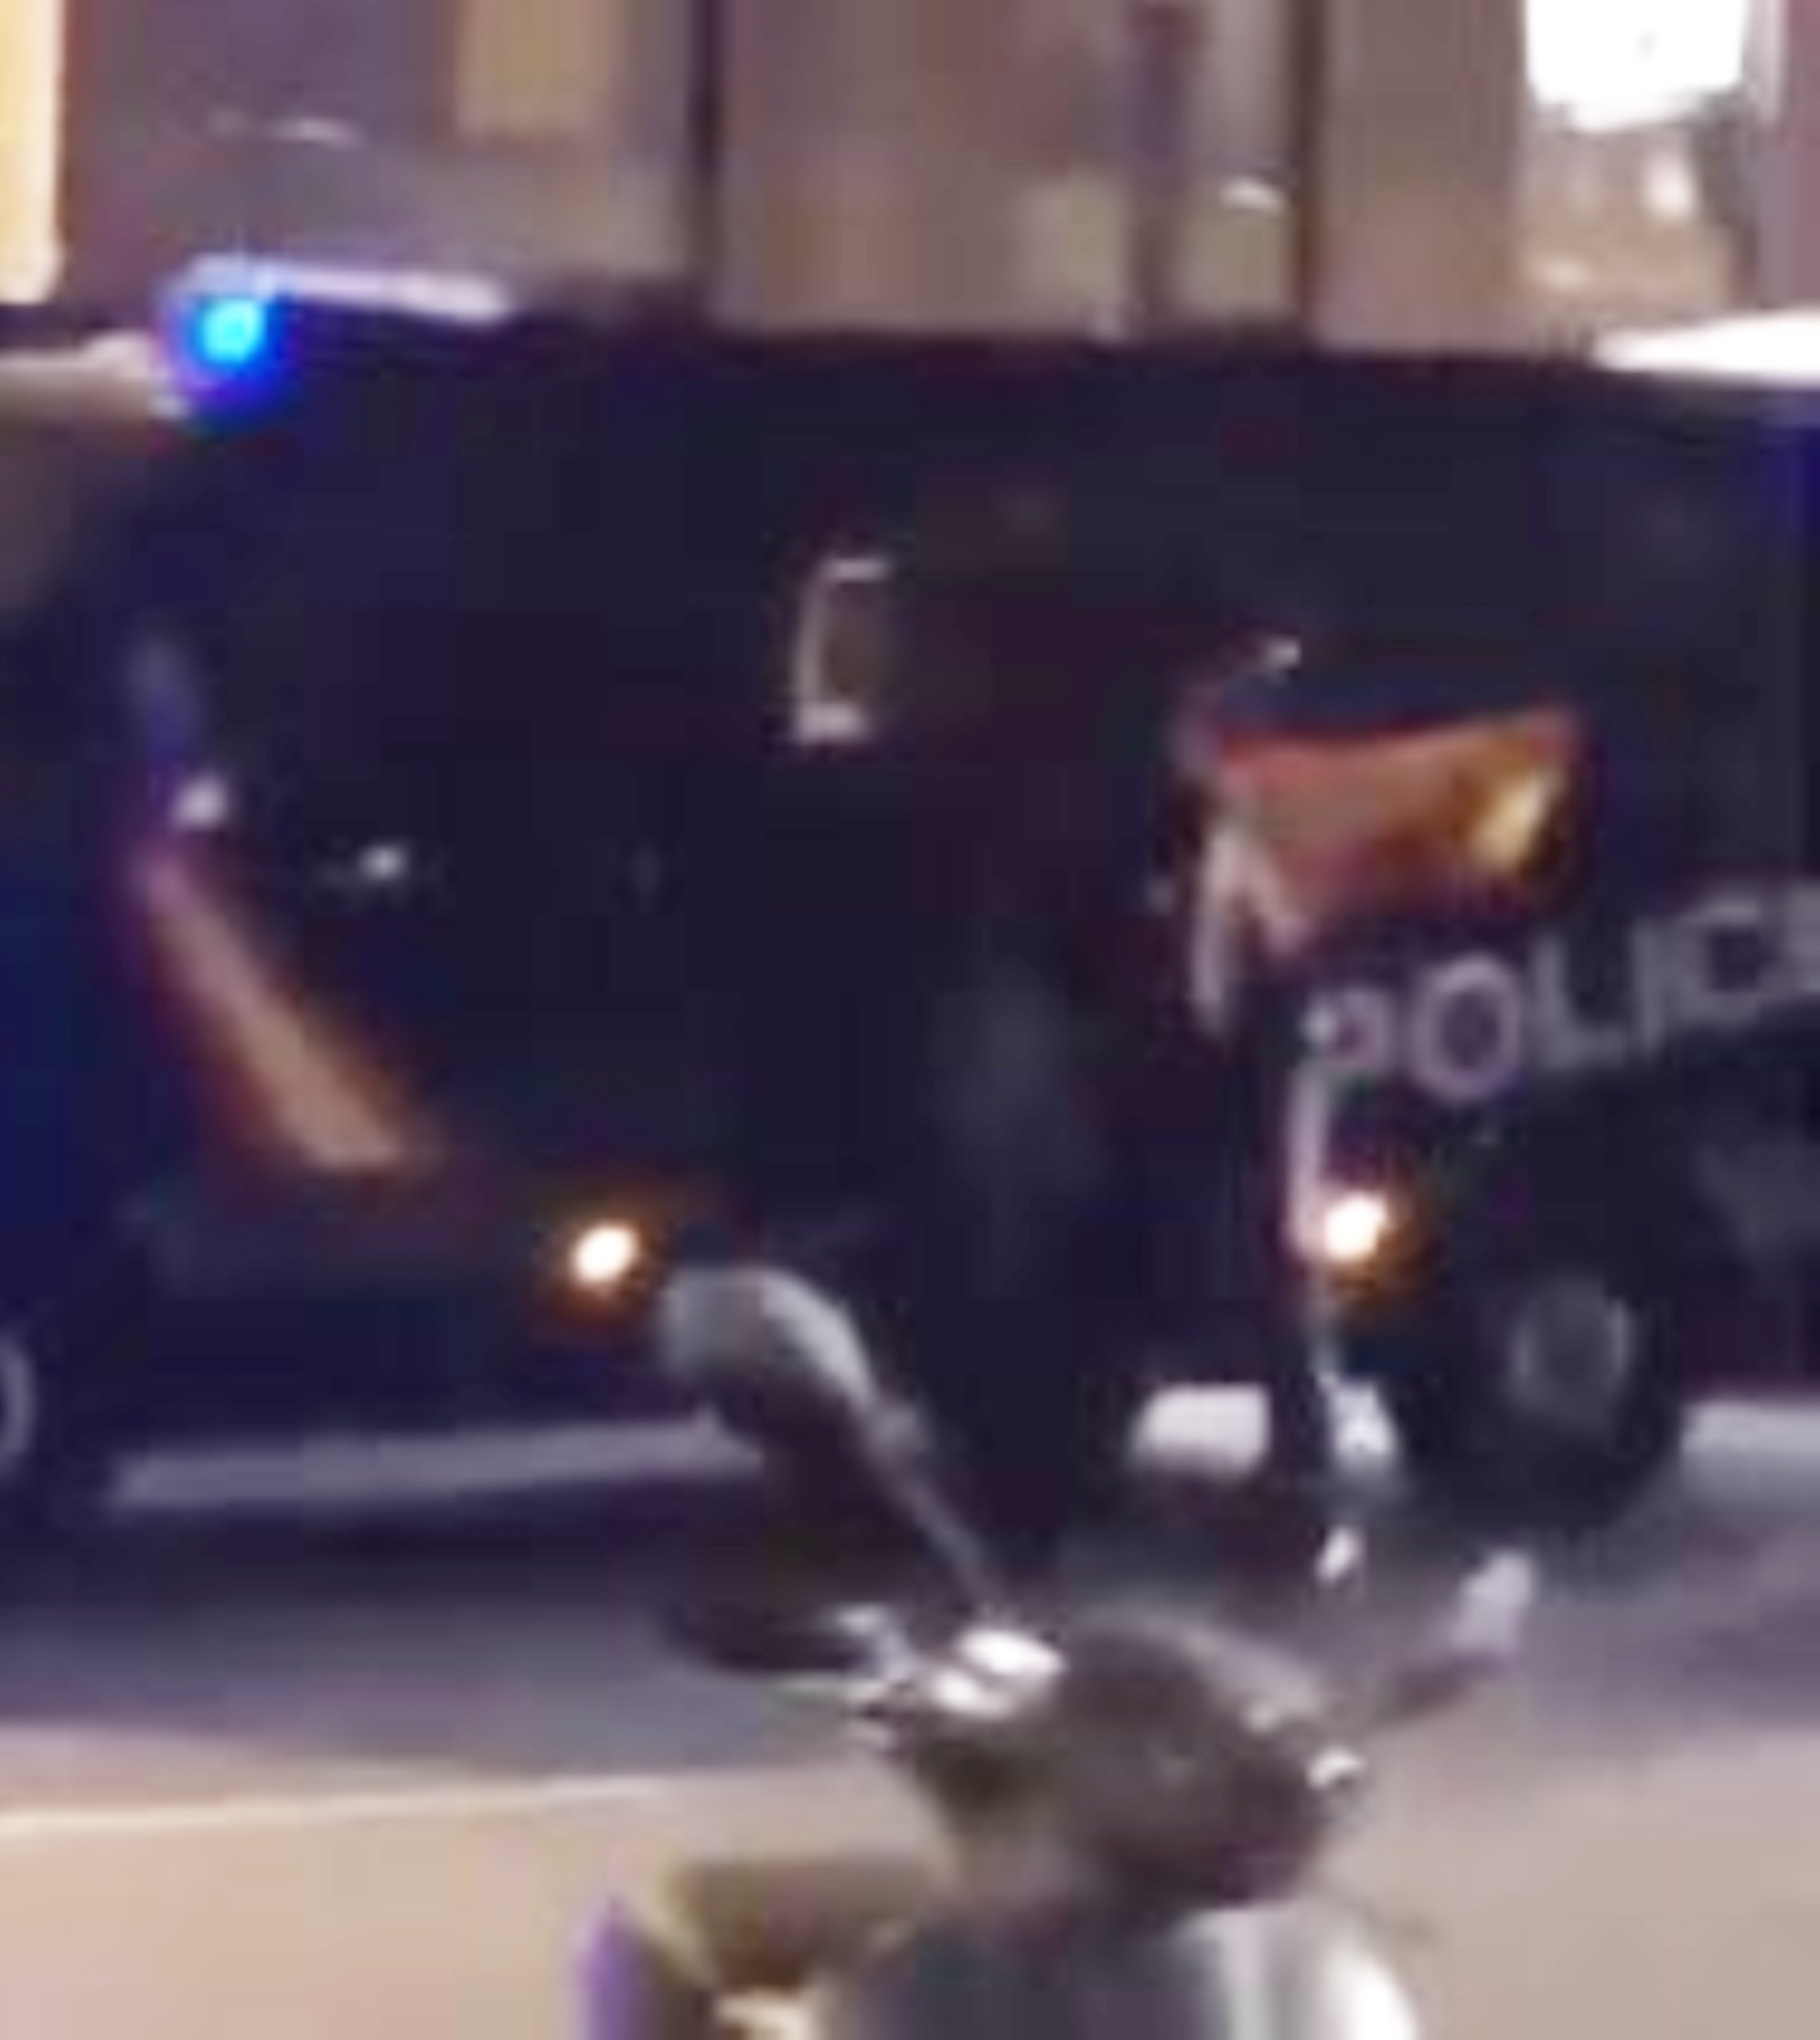 VíDEO: Un policía nacional muestra una bandera española, en pleno operativo antidisturbios